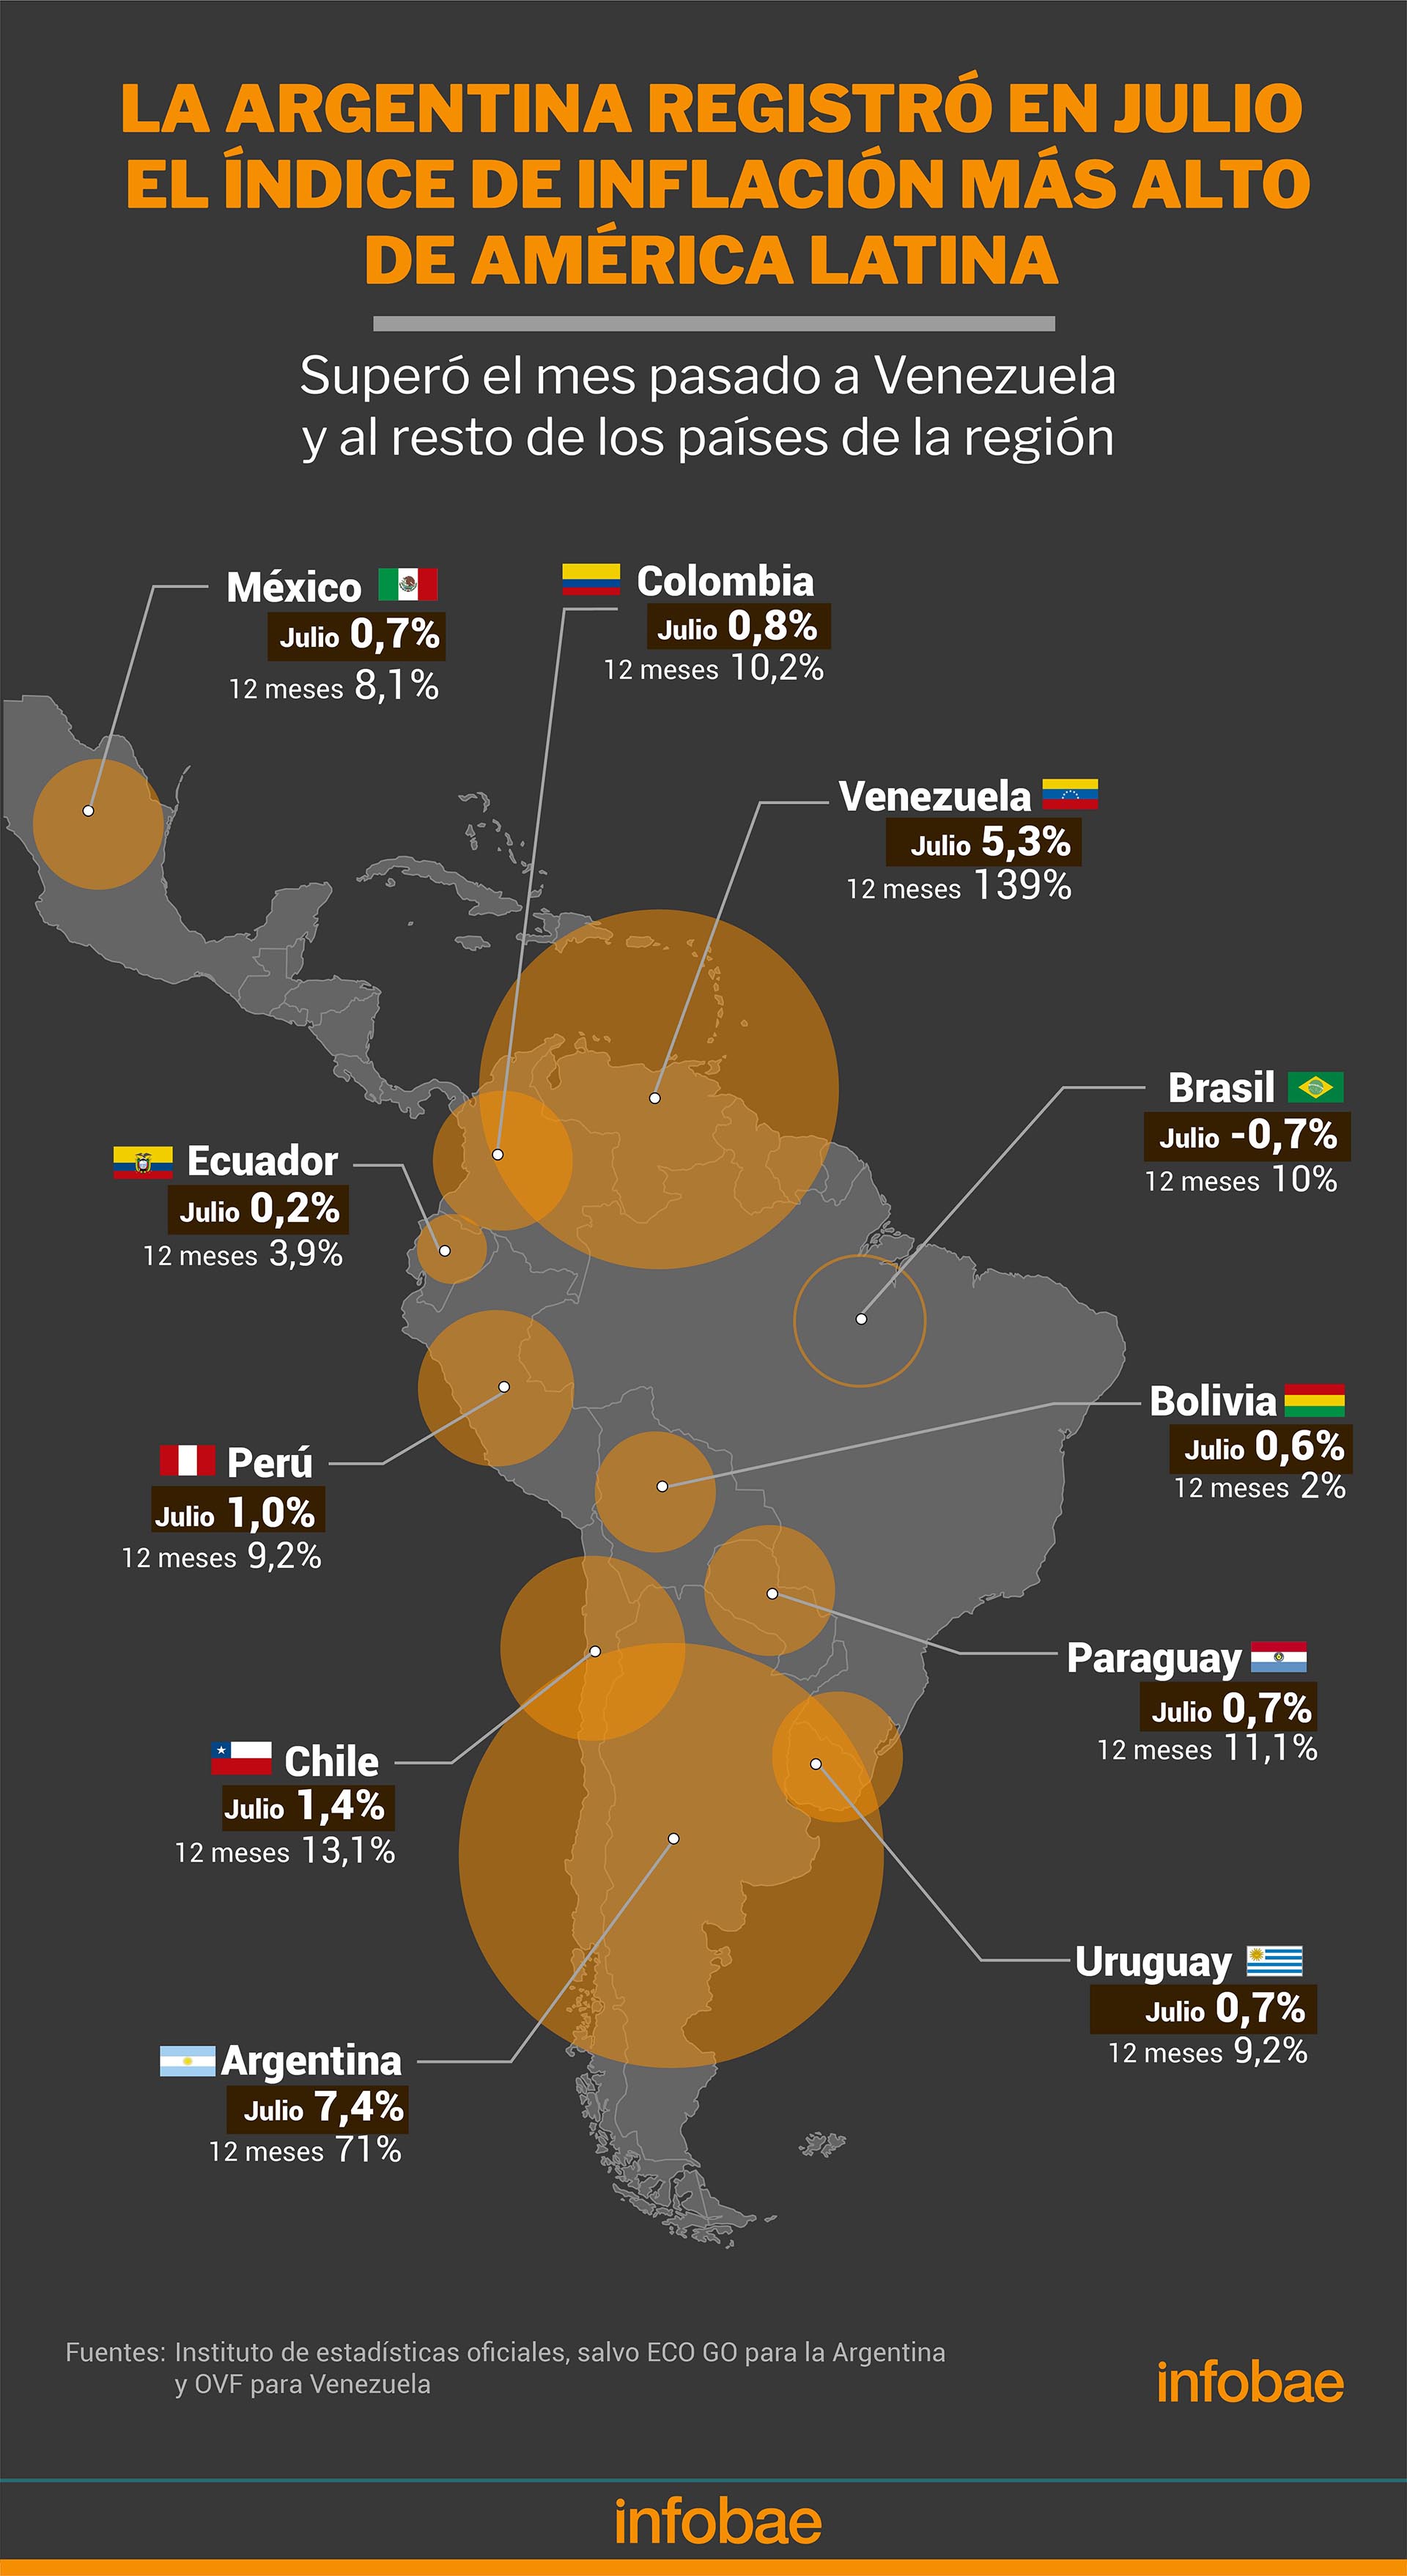 La inflación en julio en América latina
Infografía de Marcelo Regalado